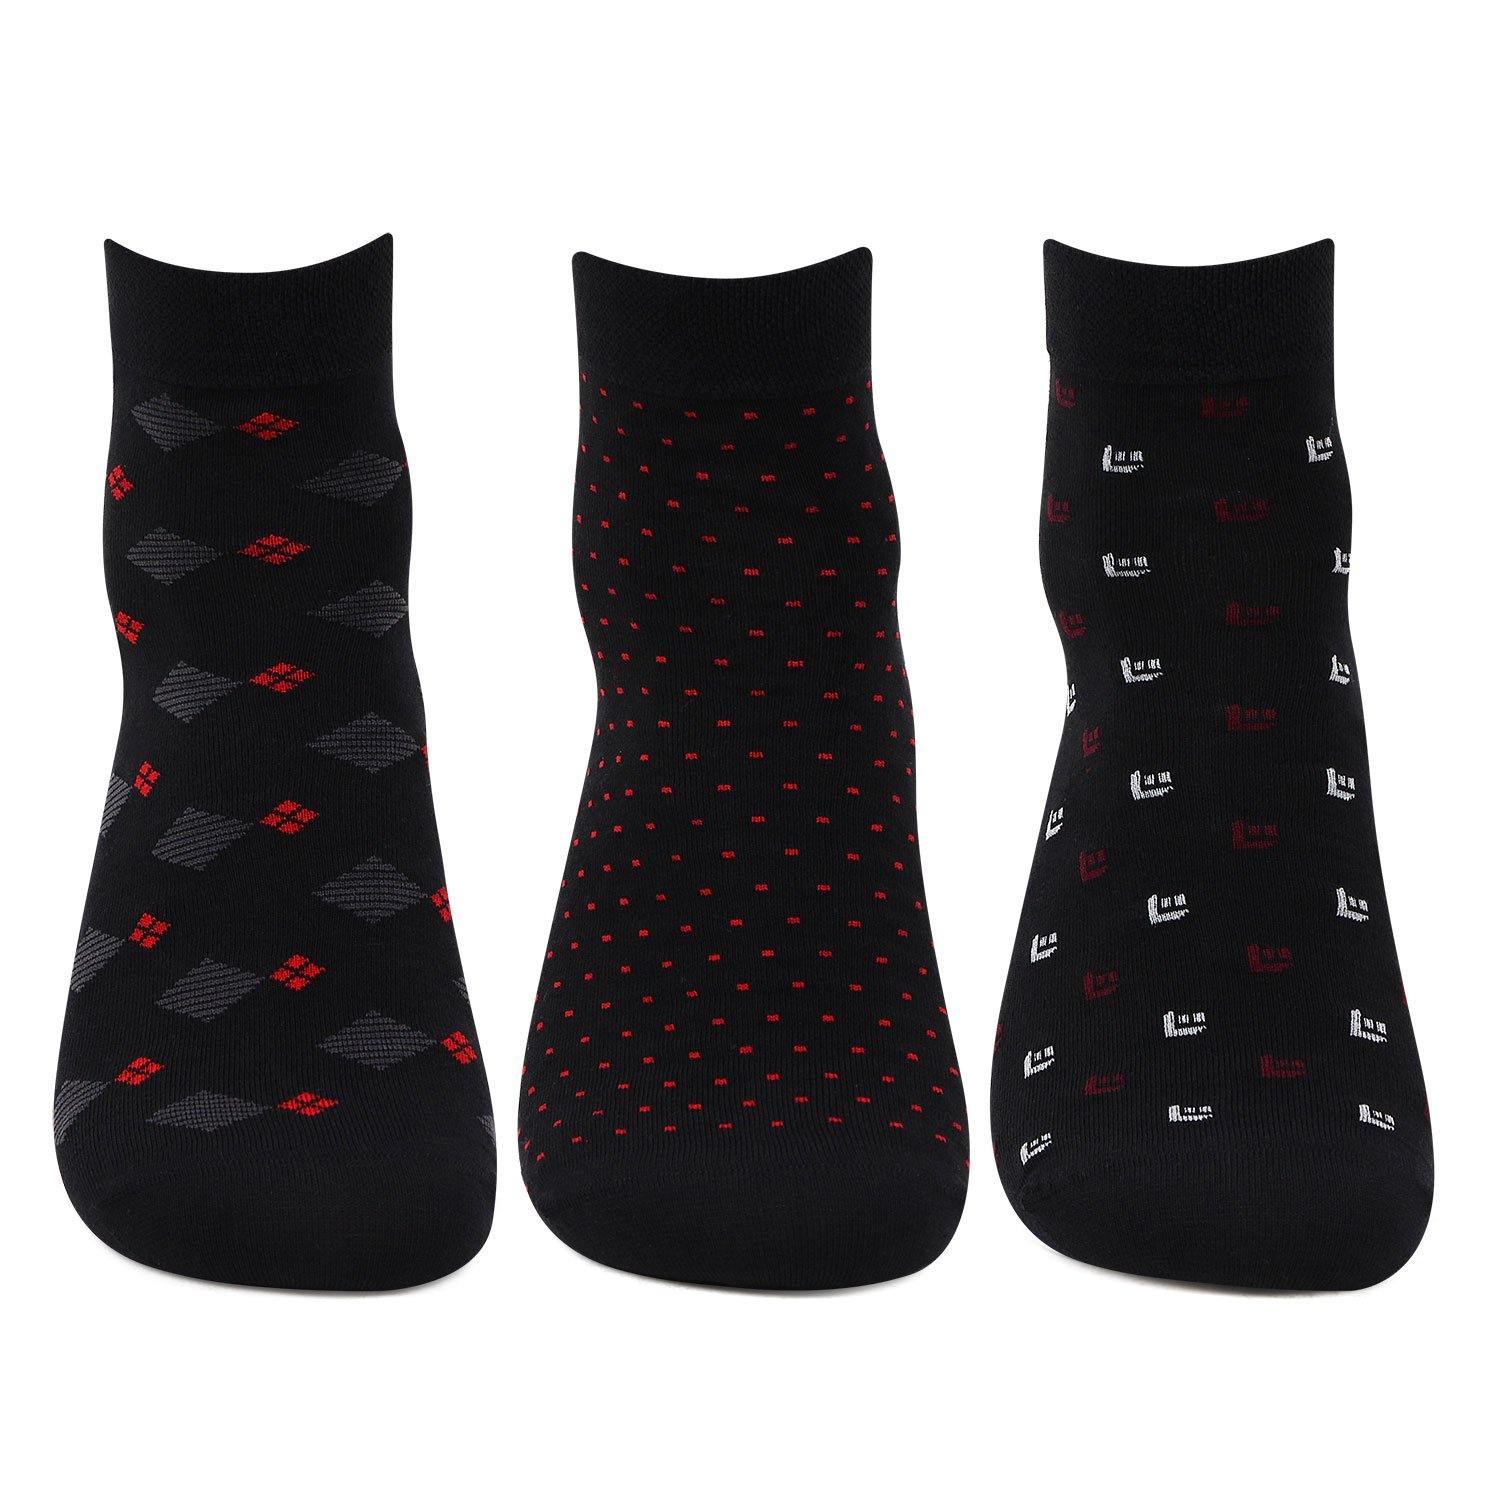 Buy Men's Socks Online - Premium Socks for Men in India – Bonjour Group